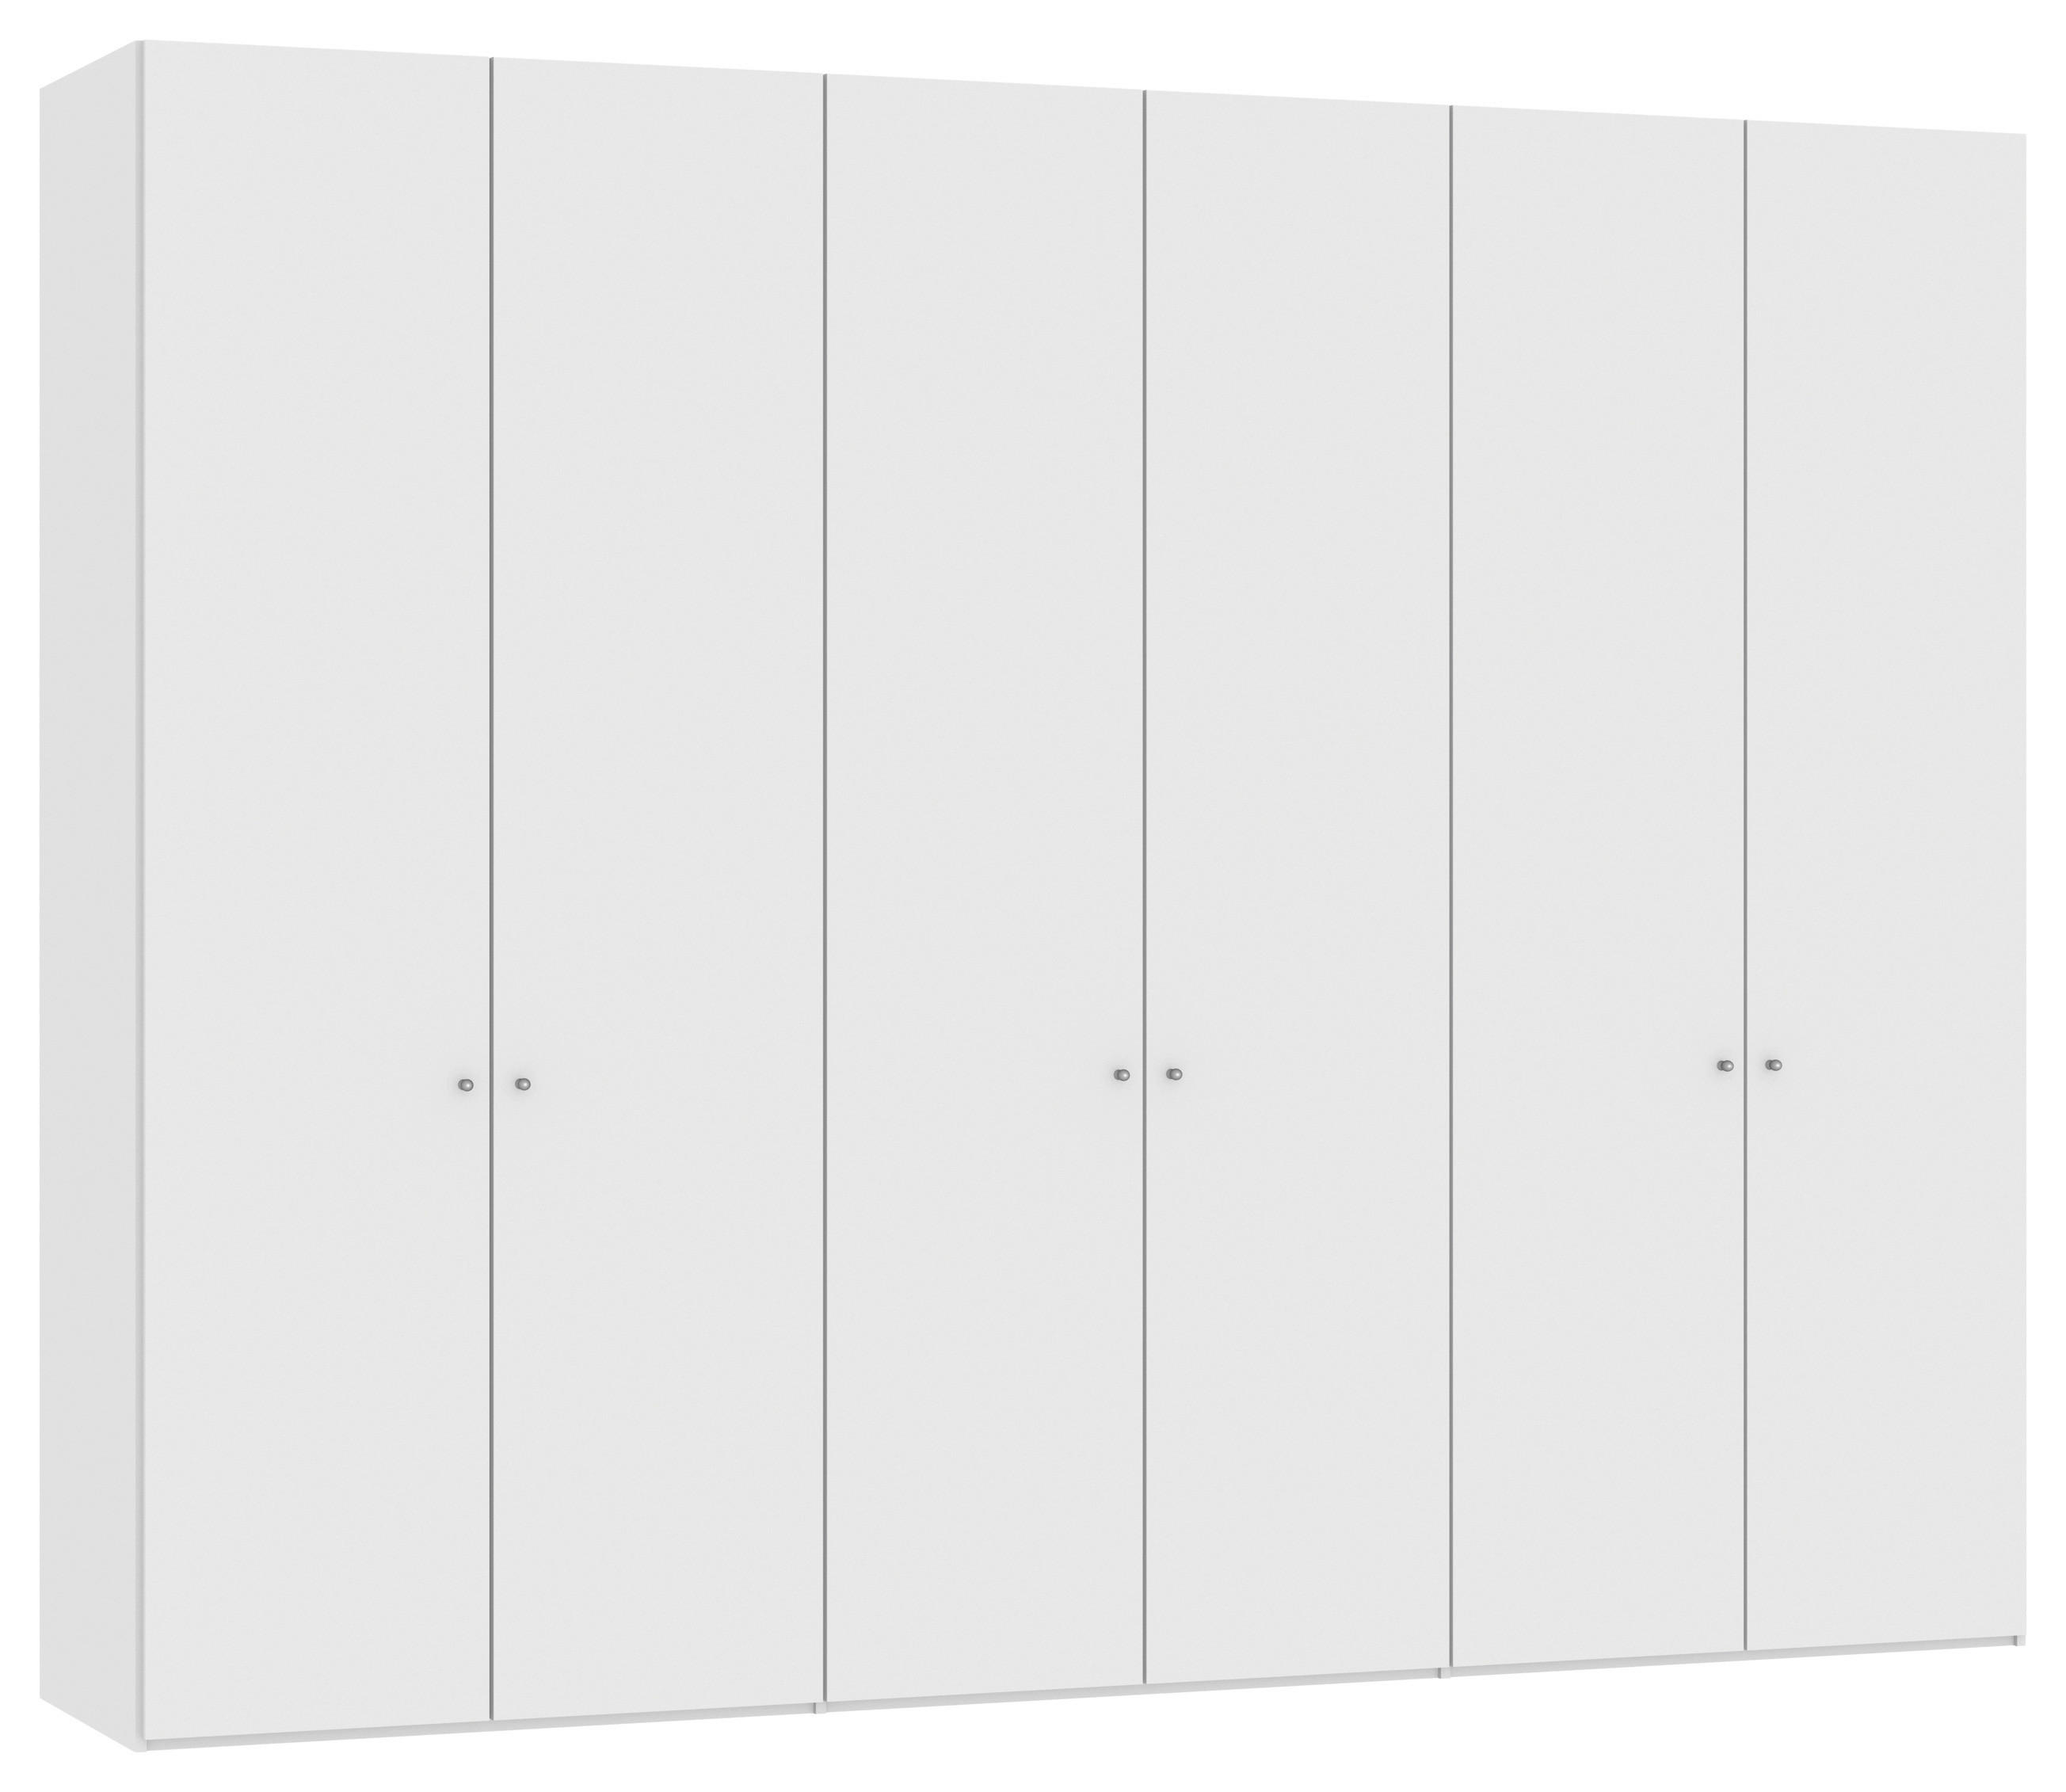 DREHTÜRENSCHRANK 6-türig Weiß, Weiß Hochglanz  - Weiß Hochglanz/Silberfarben, Design, Holzwerkstoff/Metall (303/236/59cm) - Jutzler